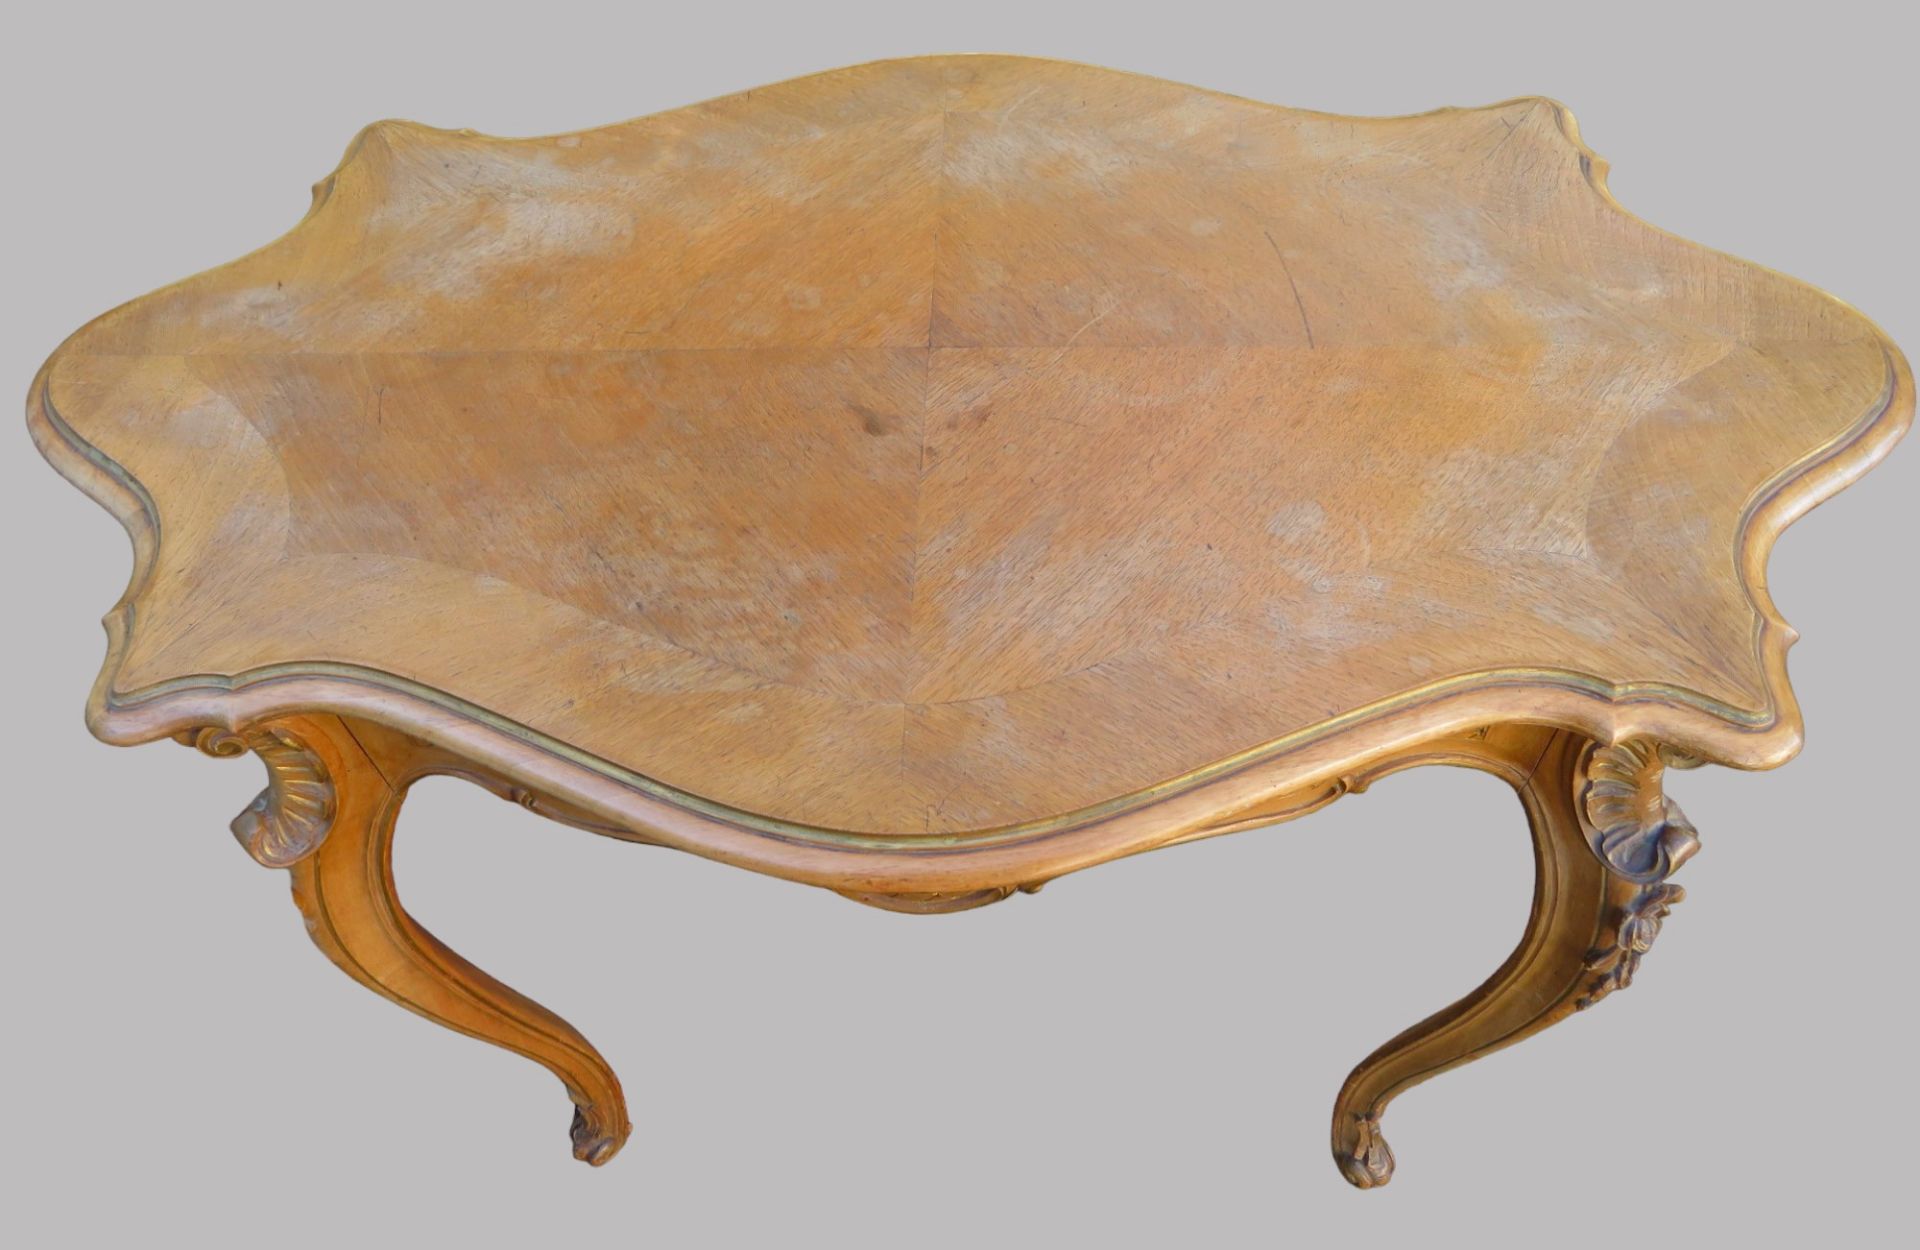 Tisch, Rokokostil, 19. Jahrhundert, Nussbaum beschnitzt, rest.bed., 74 x 90 x 54 cm. - Image 2 of 3